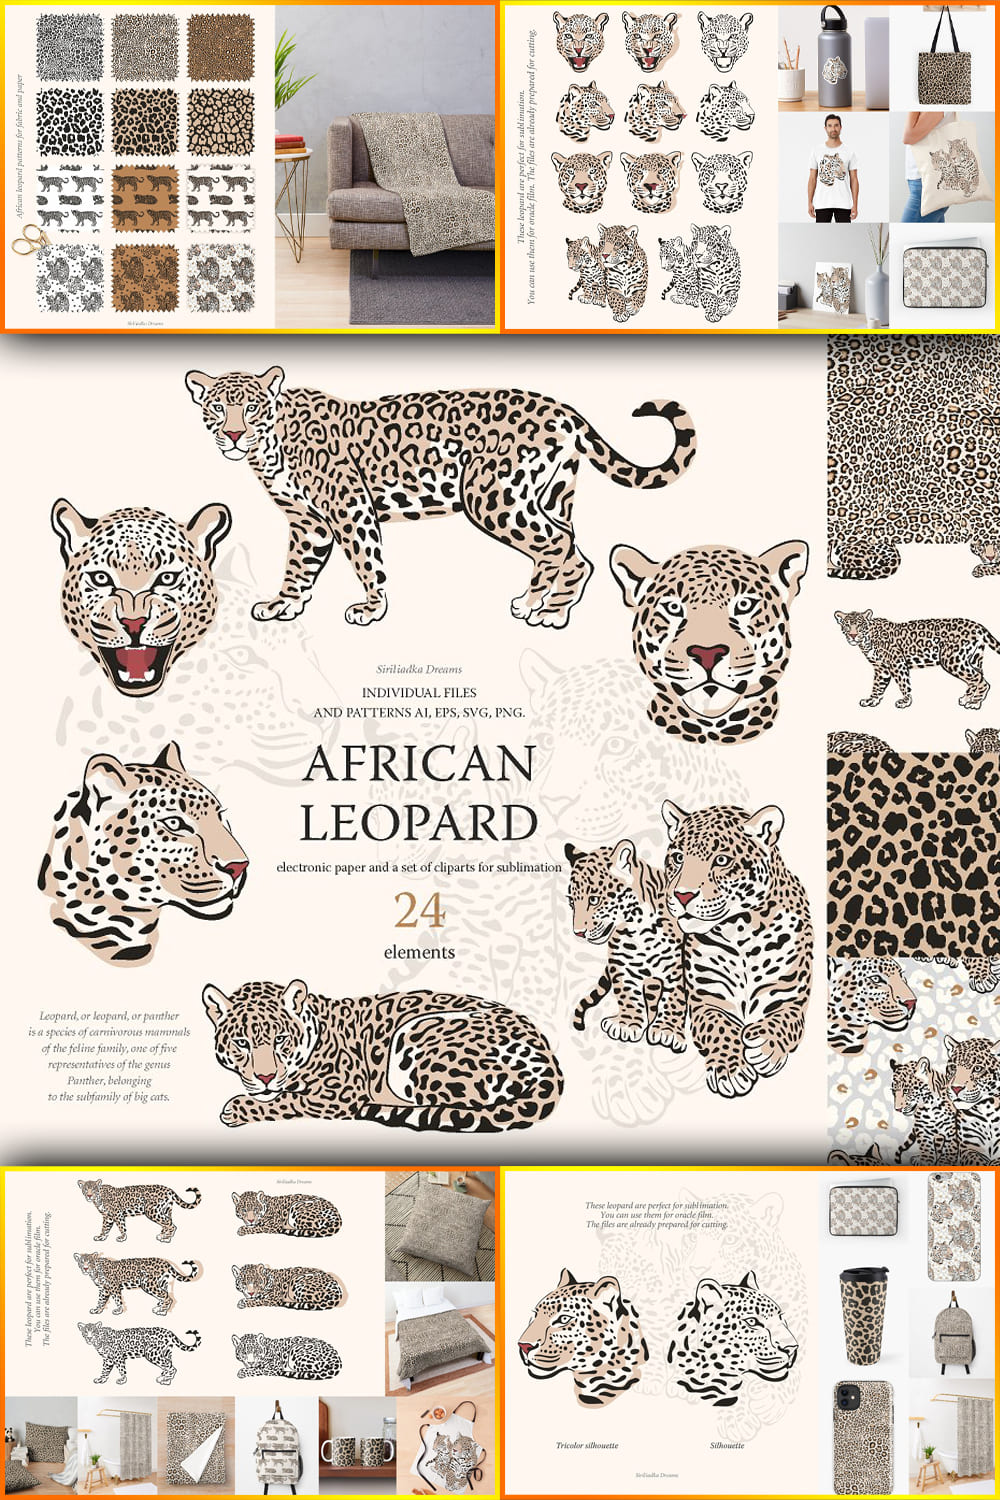 5454465 african leopard pinterest 1000 1500 542